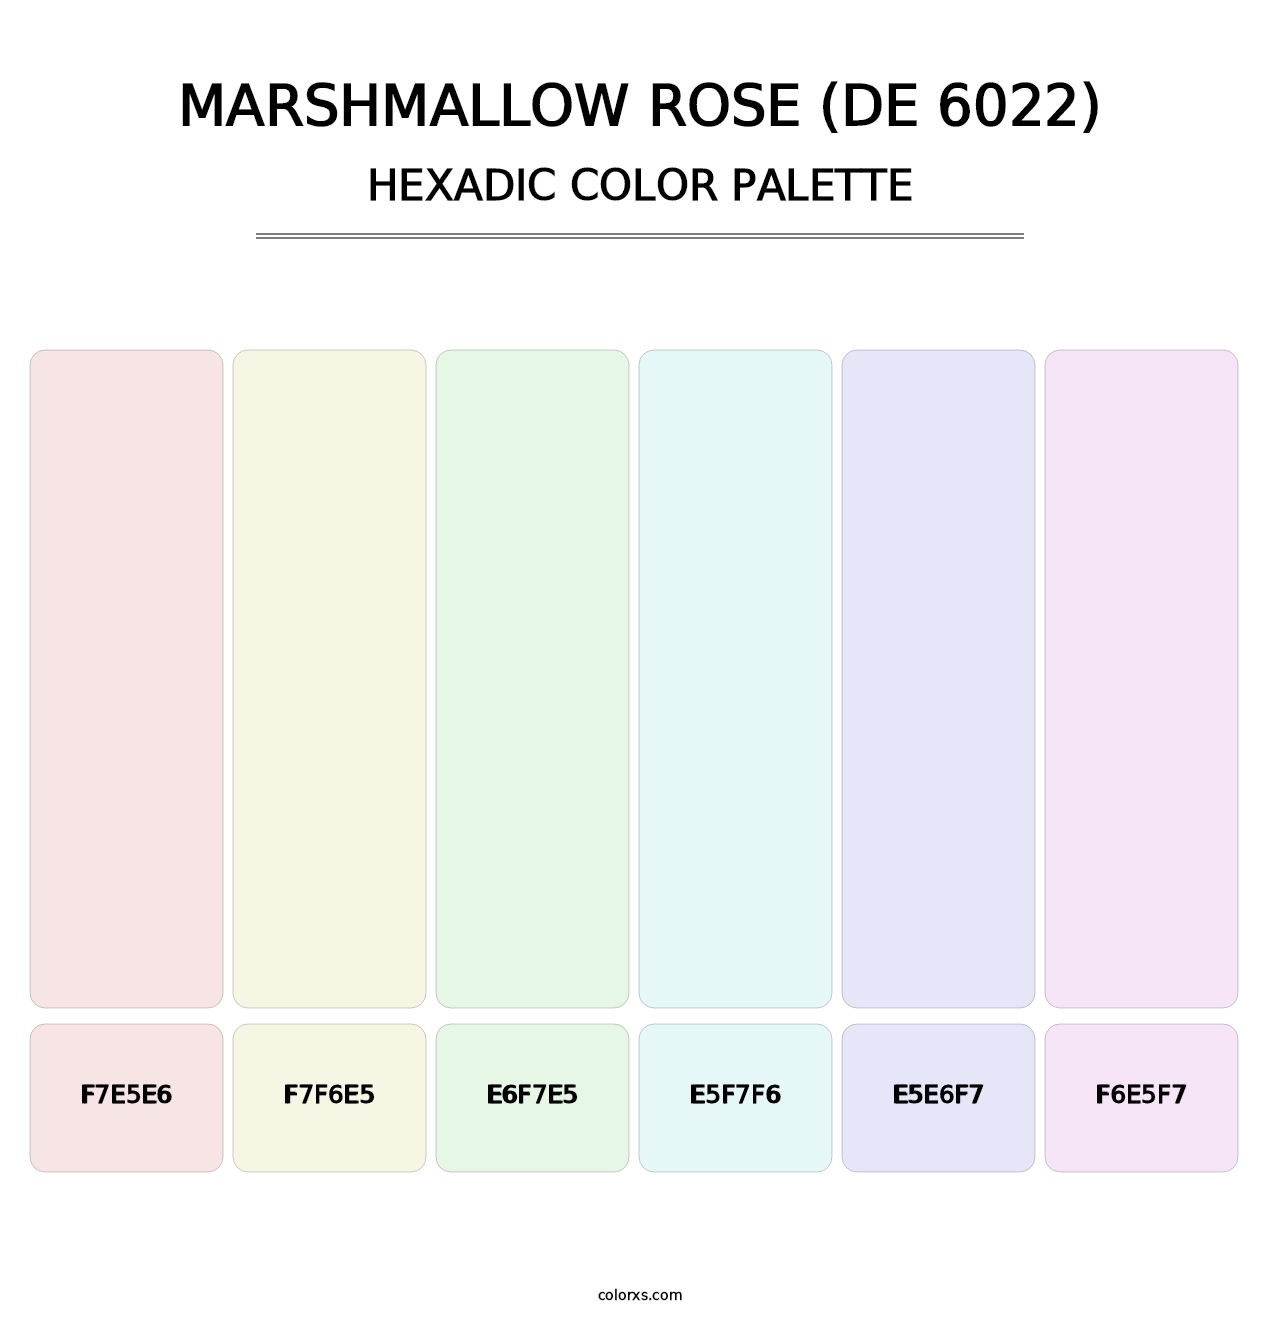 Marshmallow Rose (DE 6022) - Hexadic Color Palette